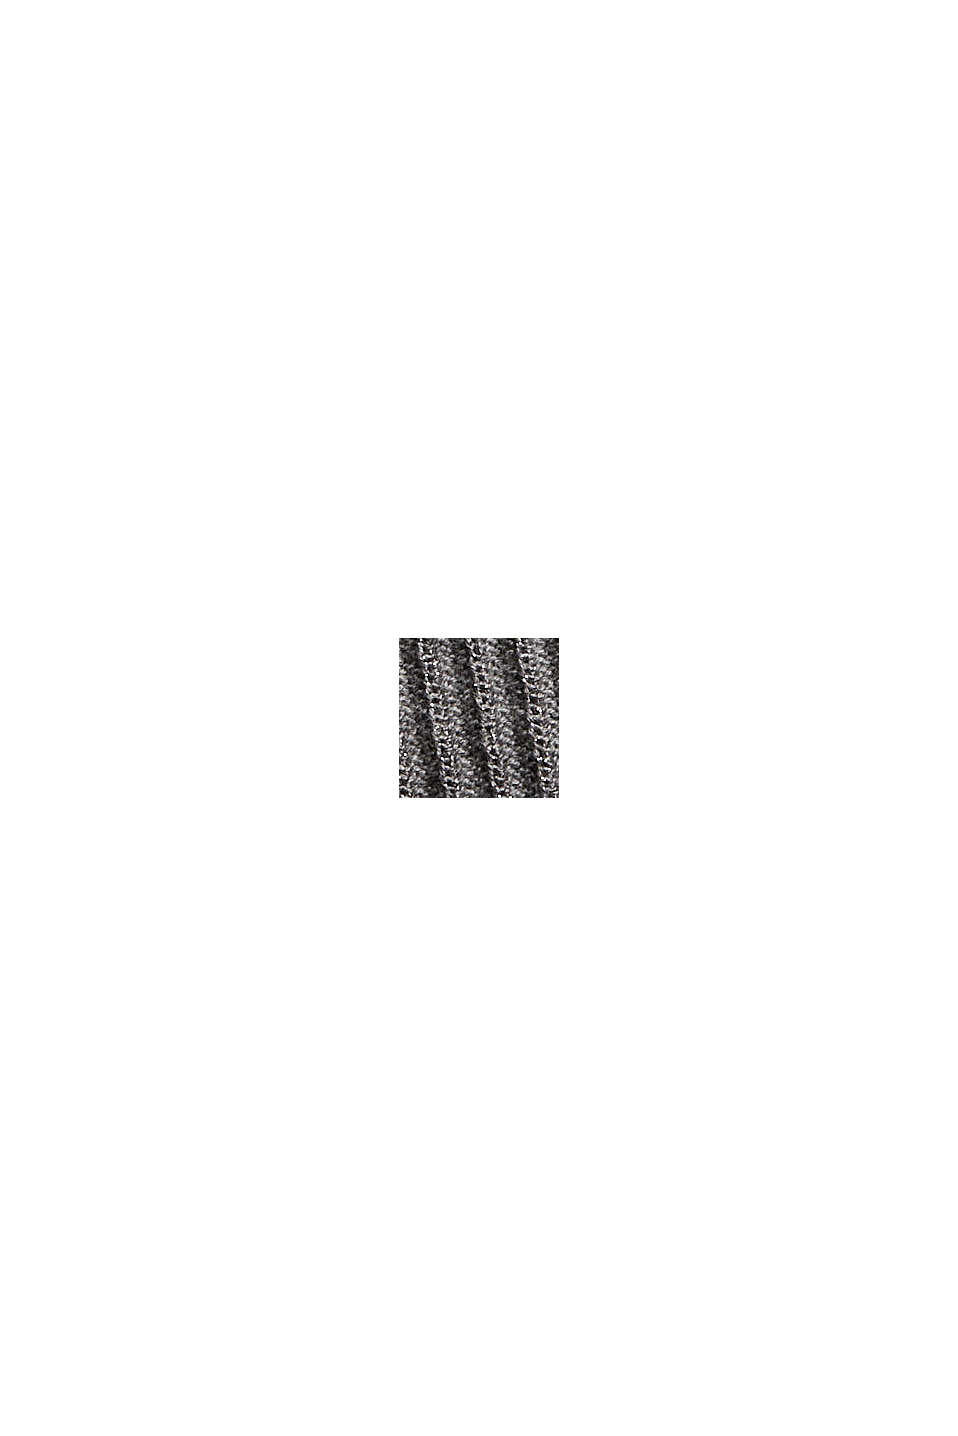 Pulovr s krátkým rukávem a polokošilovým límcem, z bio bavlny, MEDIUM GREY, swatch